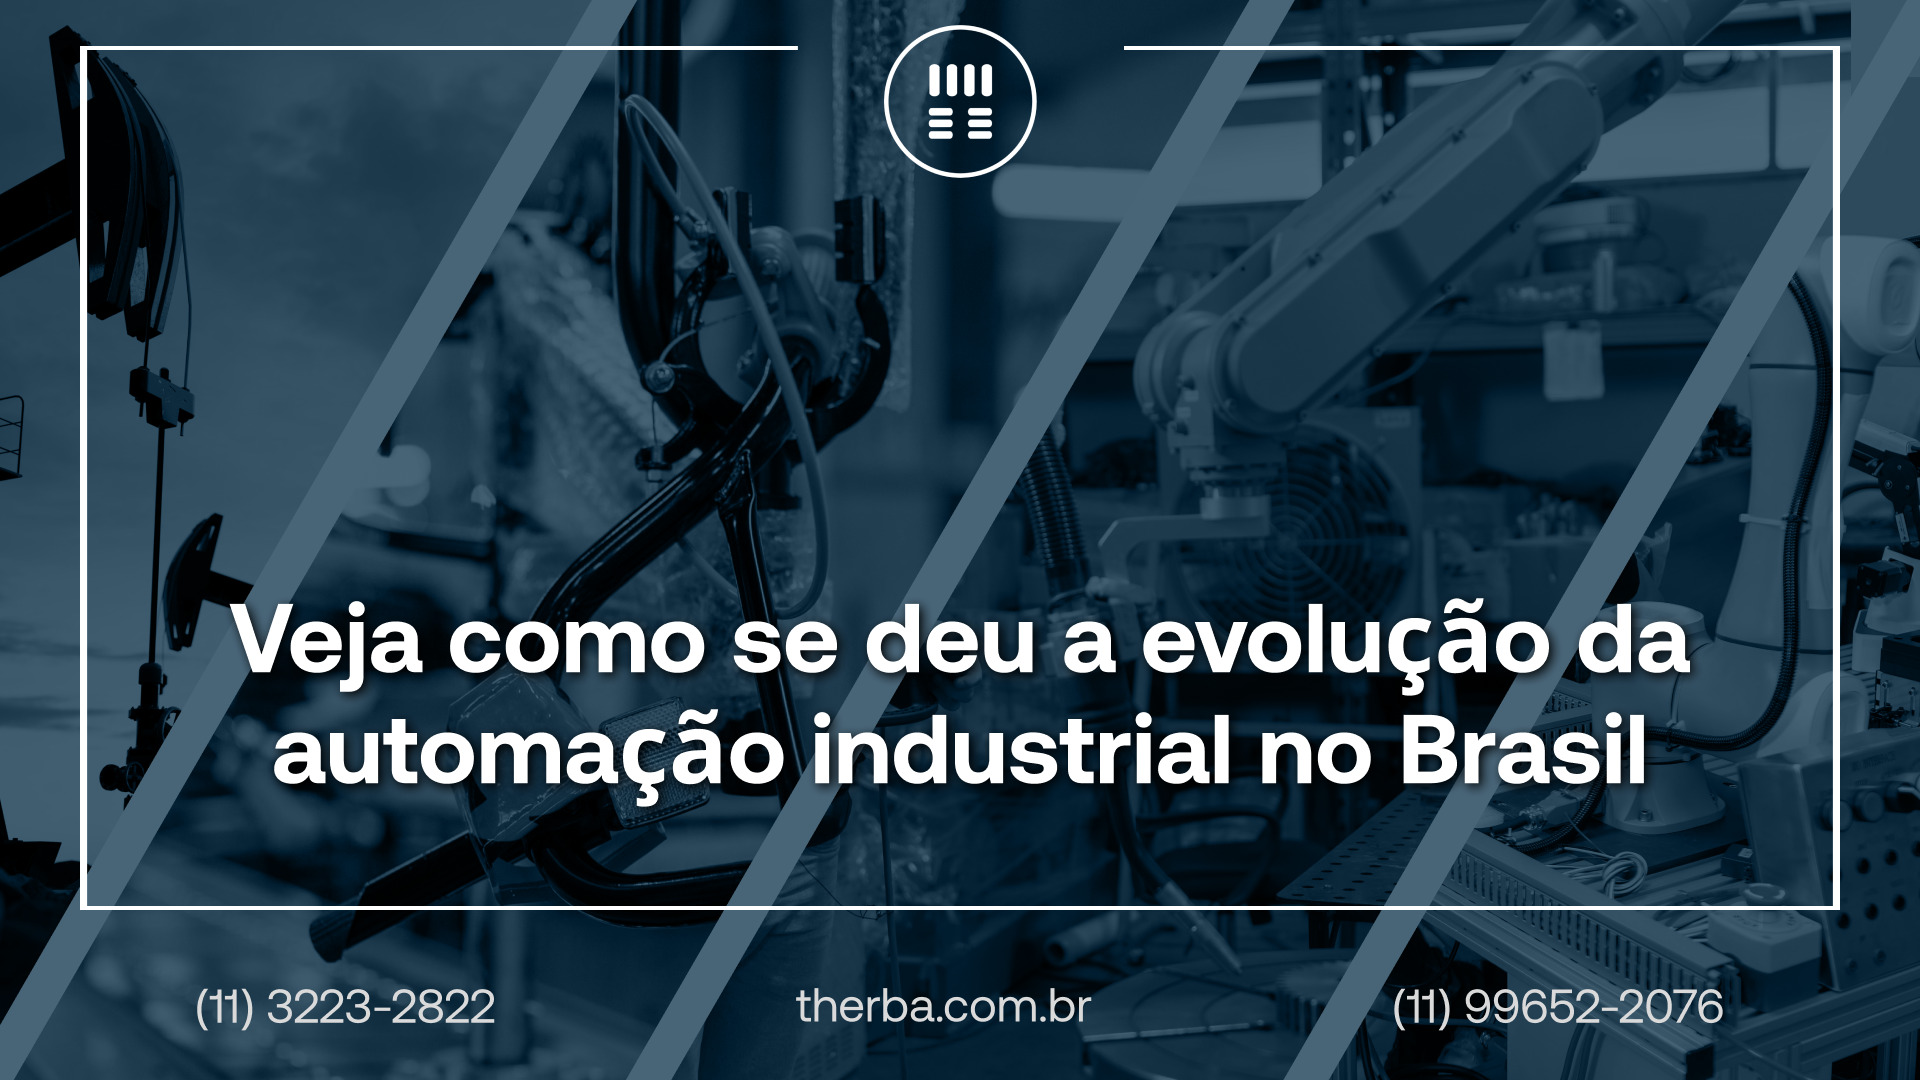 Veja como se deu a evolução da automação industrial no Brasil